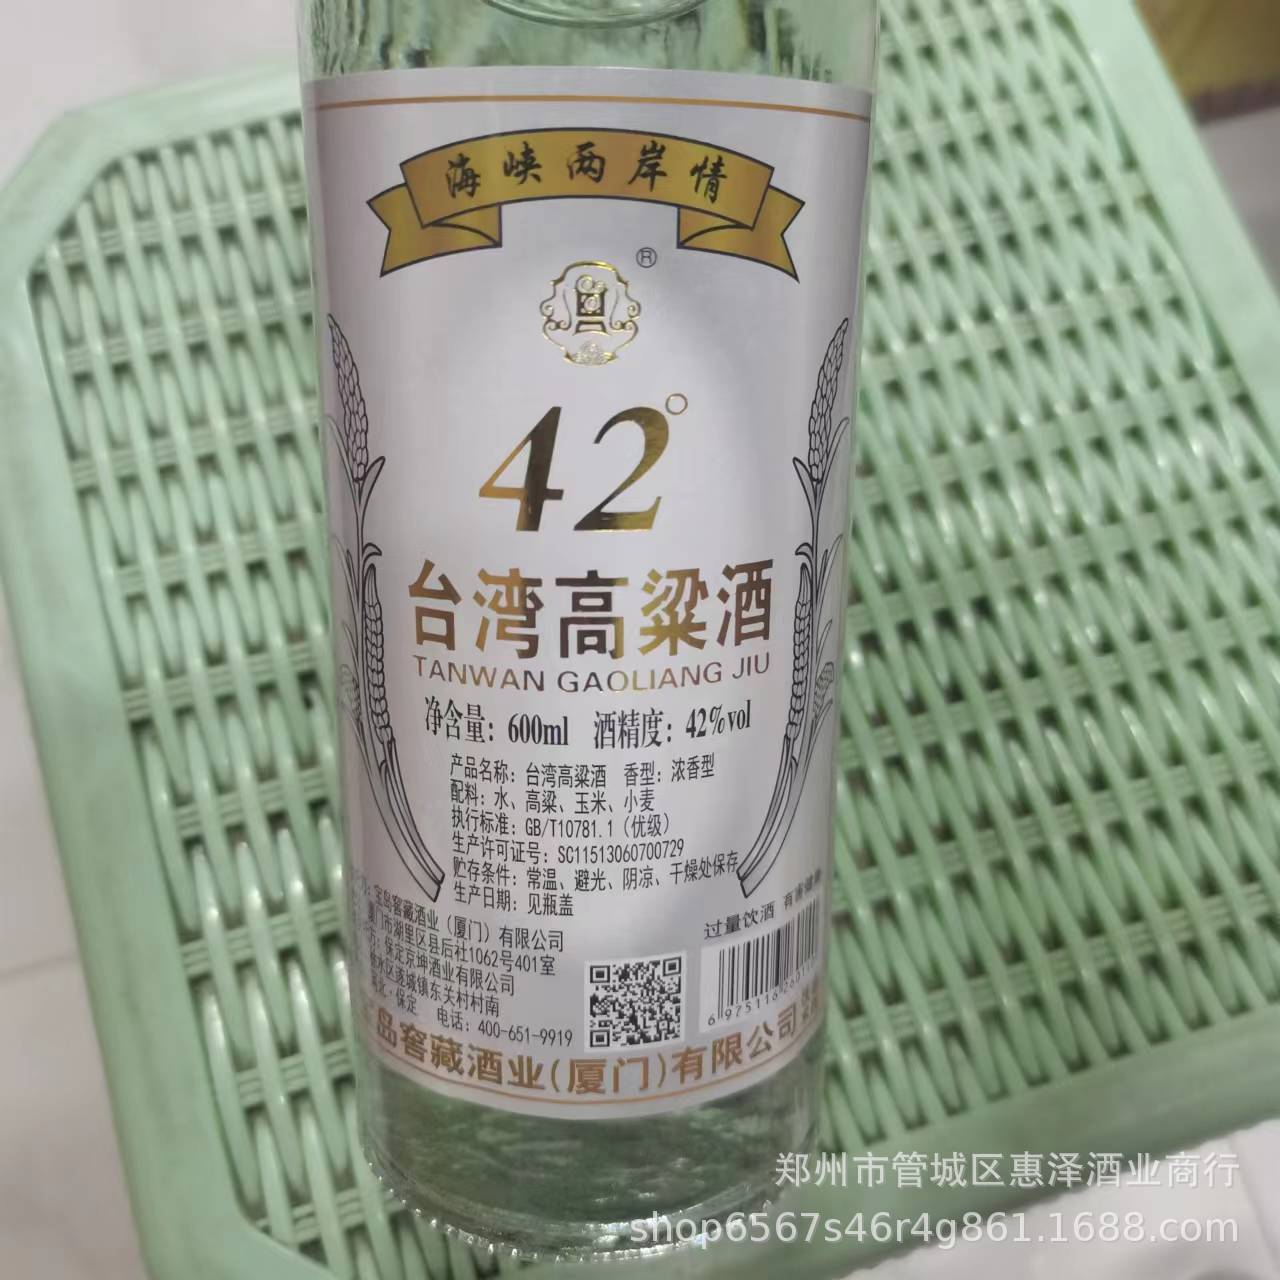 批发42°台湾高粱酒宝岛窖藏浓香型纯粮光瓶600ml*12瓶海峡两岸情